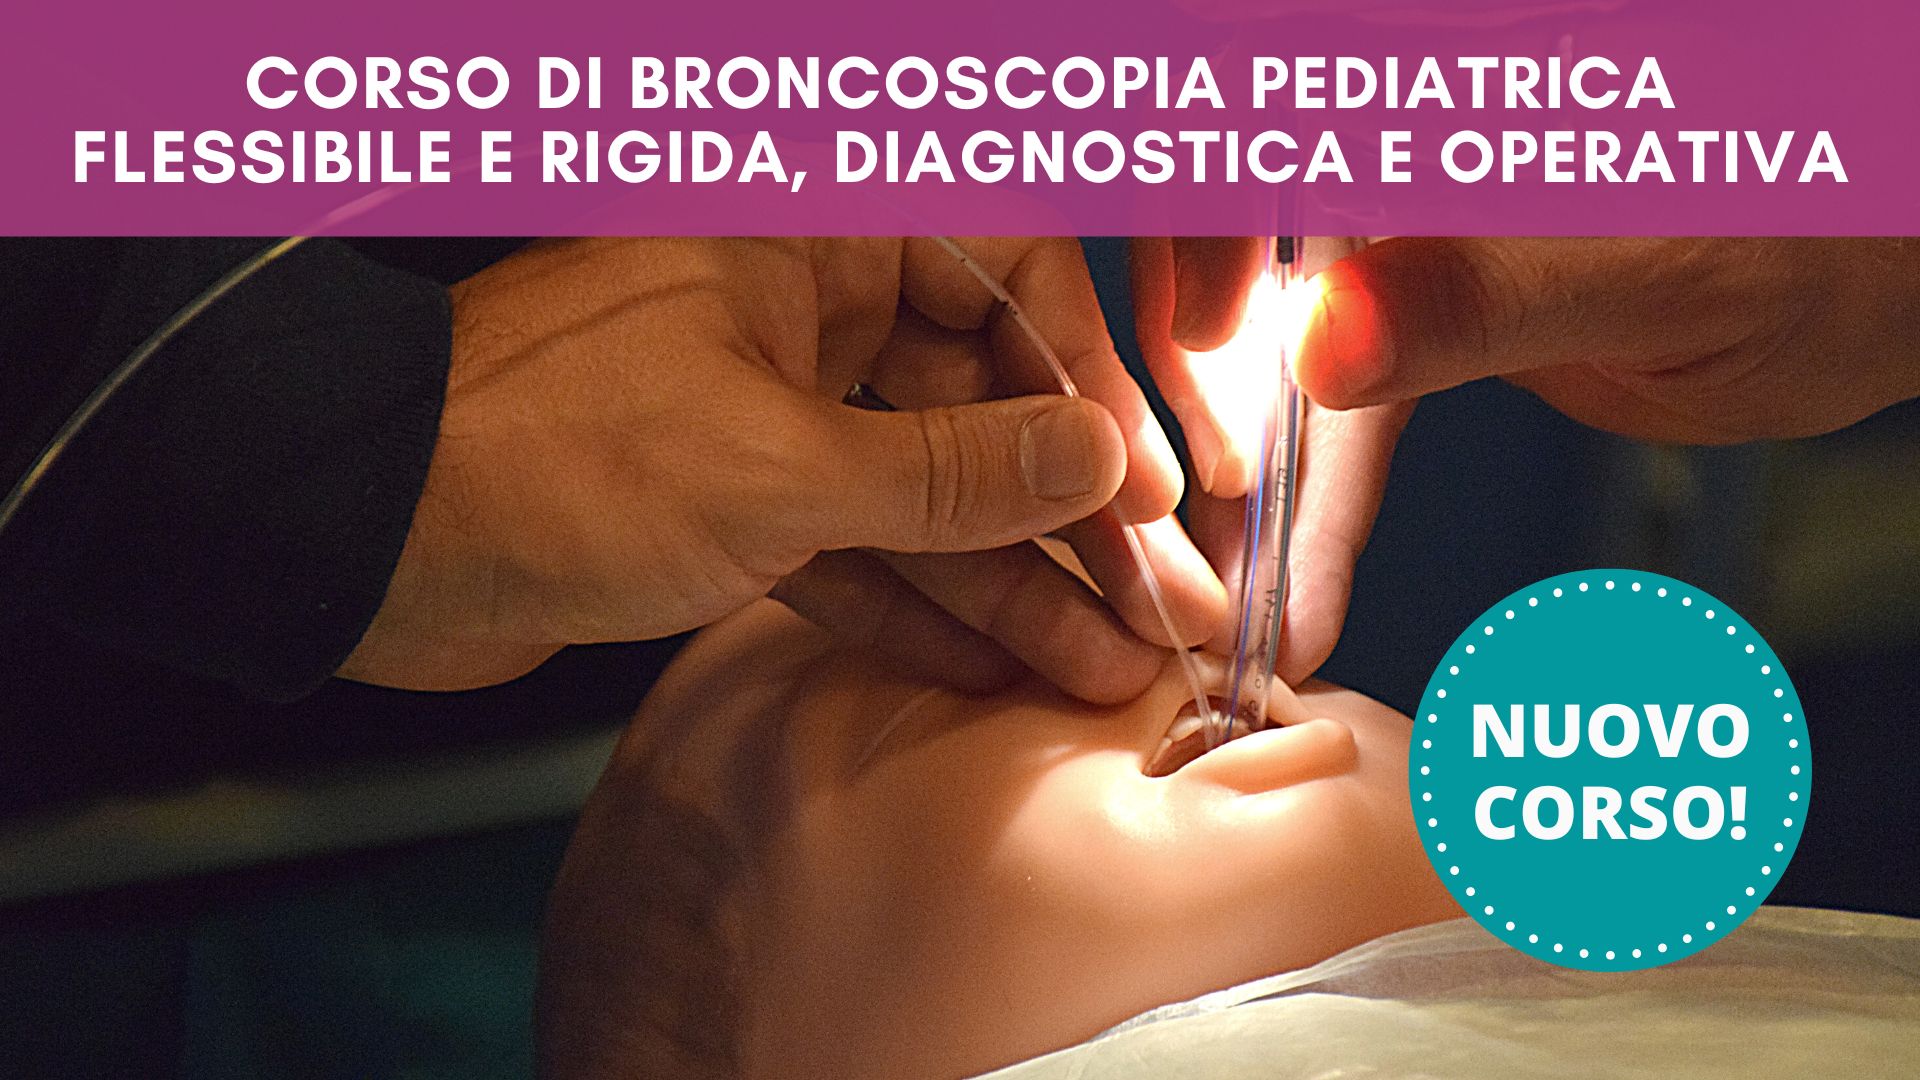 Corso di broncoscopia pediatrica flessibile e rigida, diagnostica e operativa